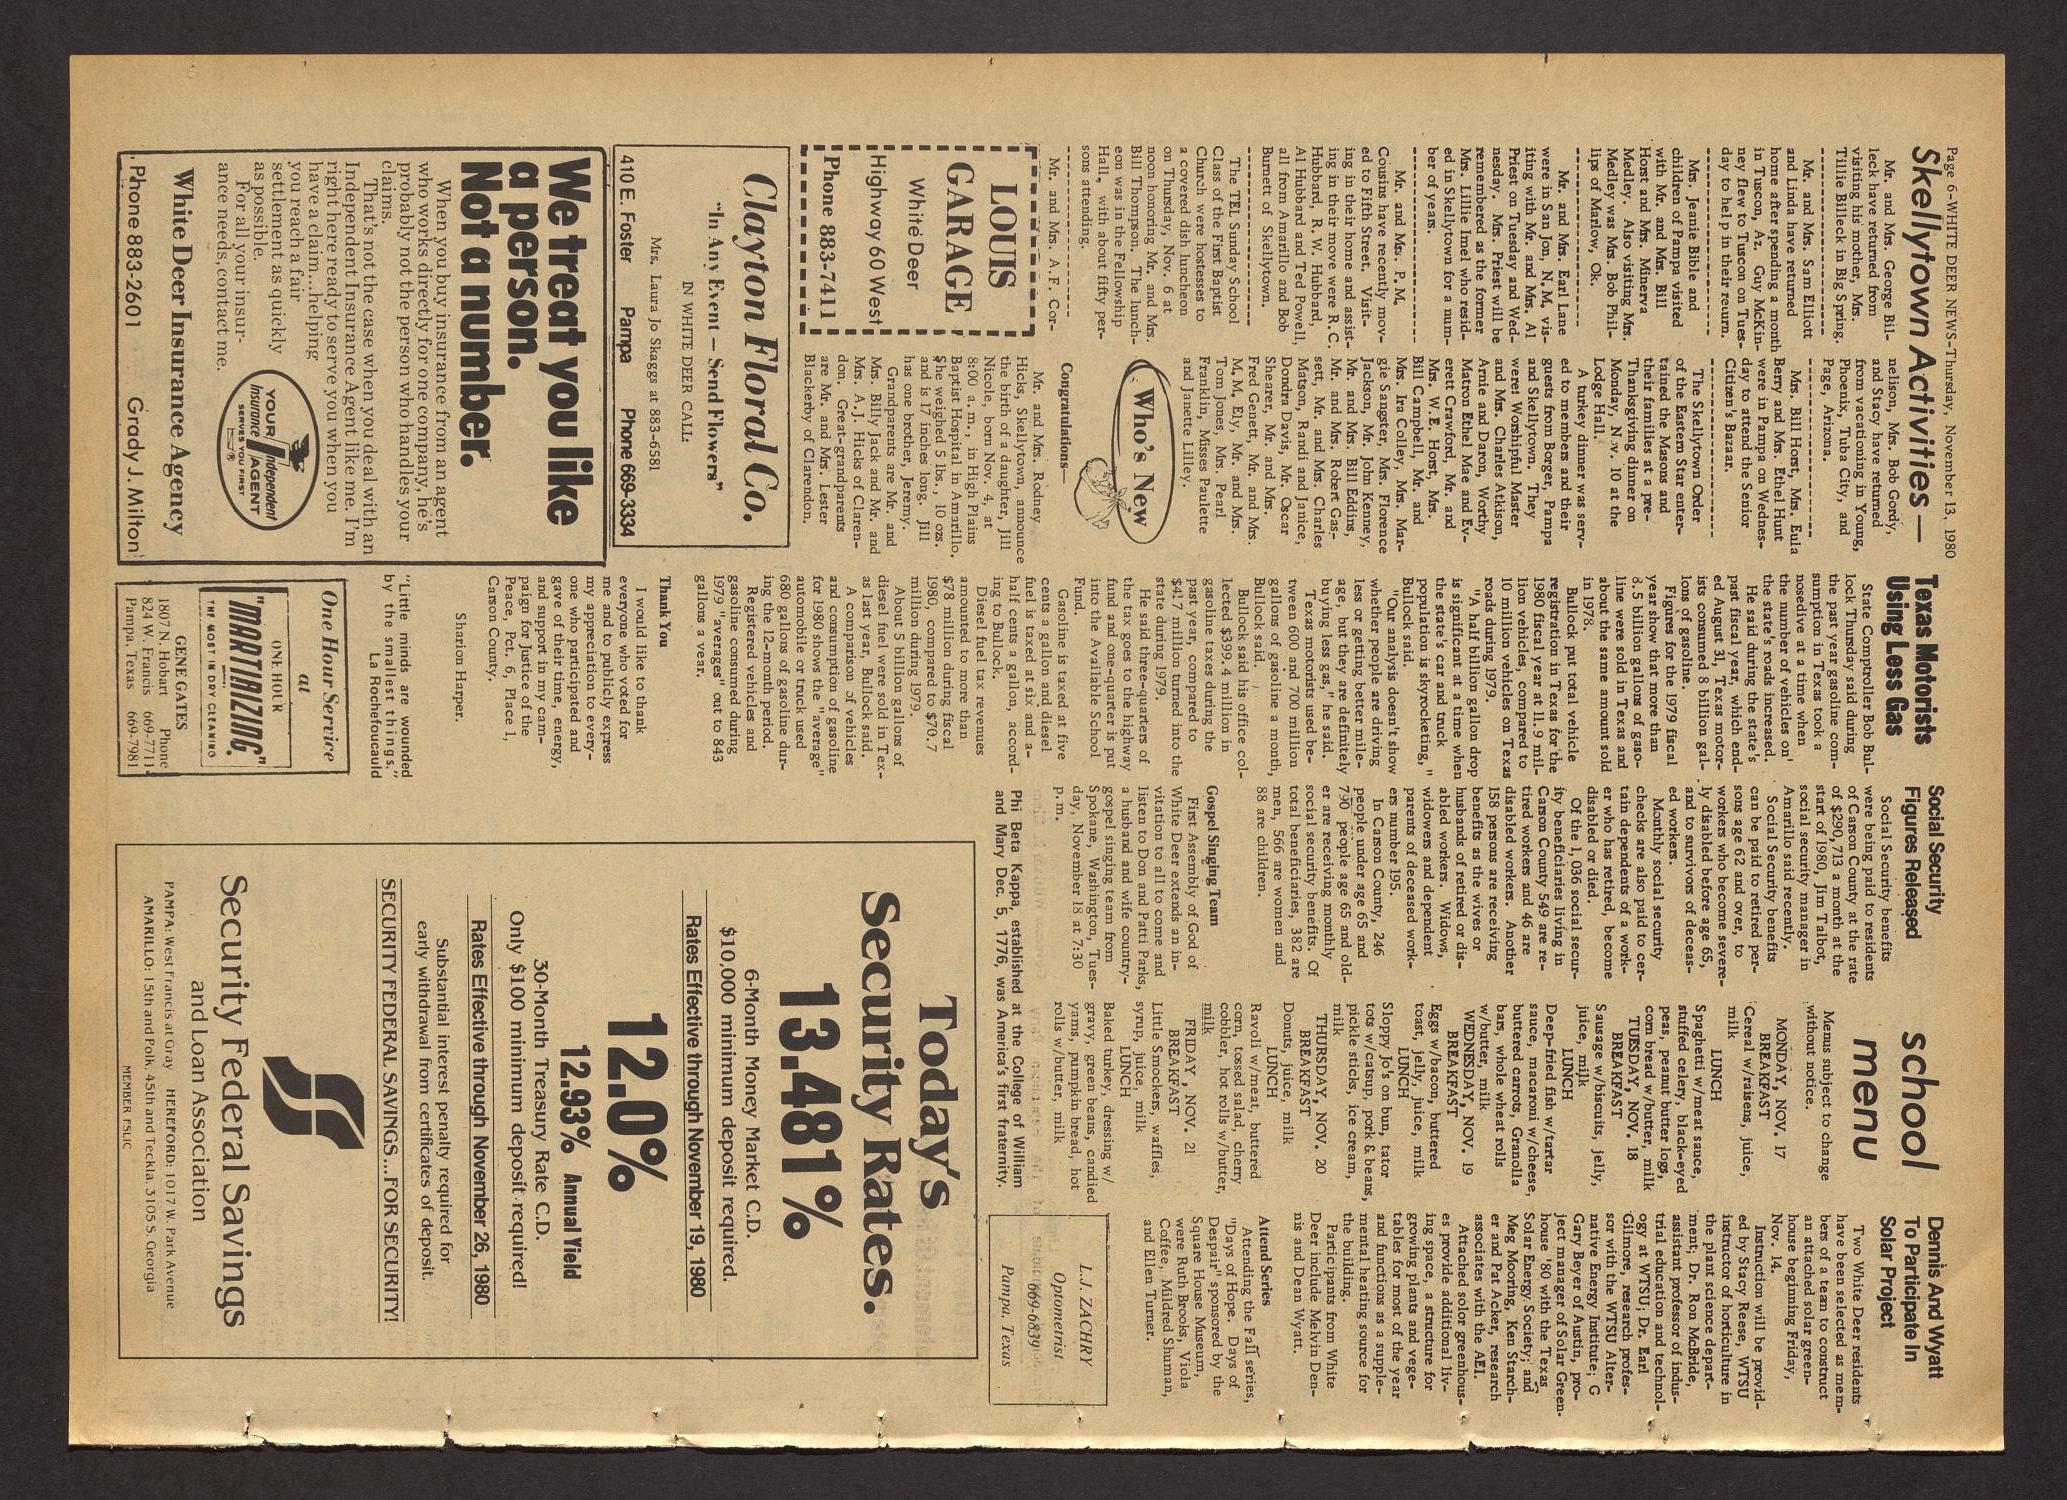 White Deer News (White Deer, Tex.), Vol. 21, No. 34, Ed. 1 Thursday, November 13, 1980
                                                
                                                    [Sequence #]: 6 of 8
                                                